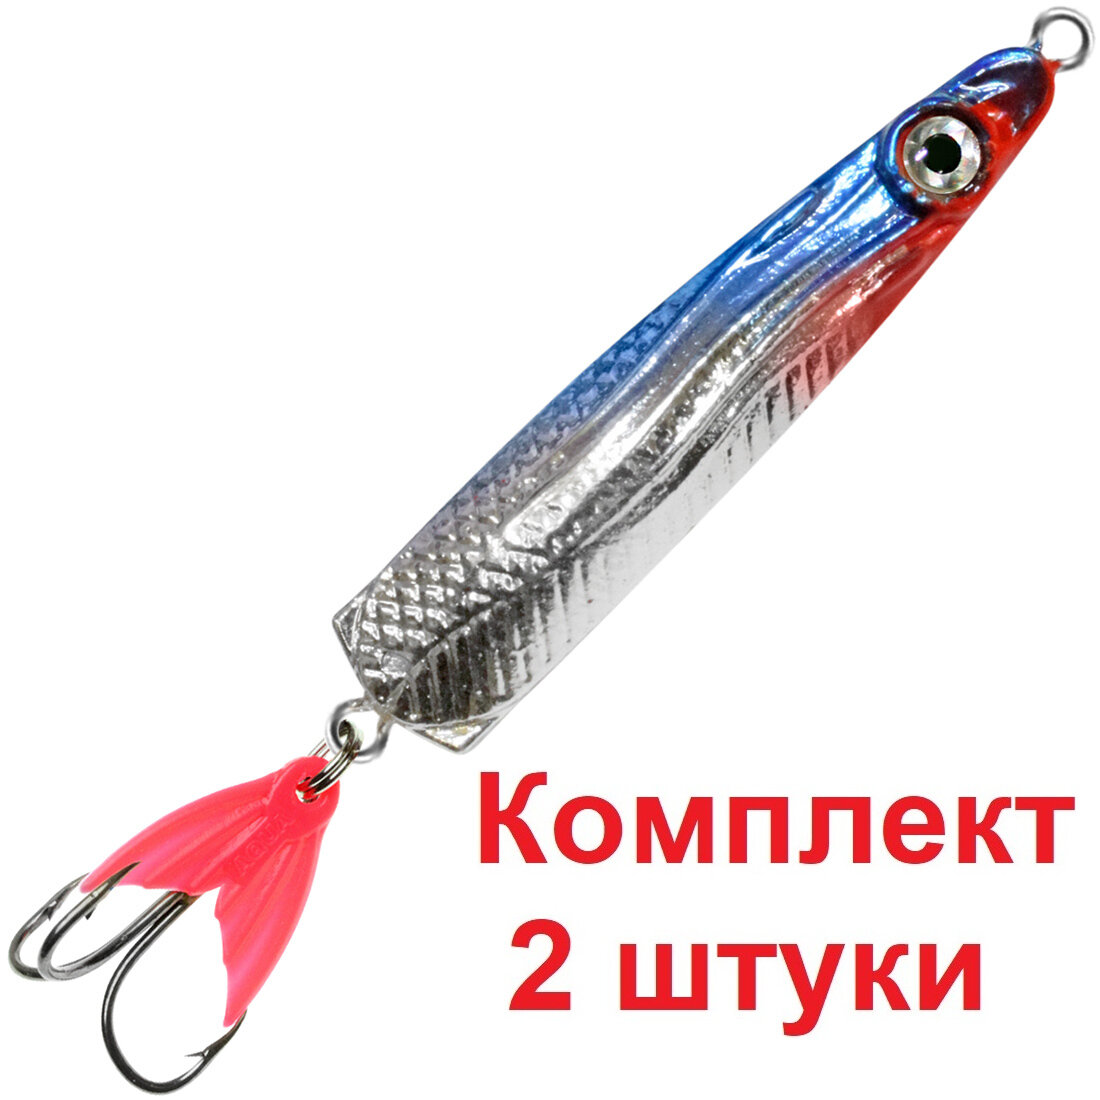 Блесна для рыбалки AQUA галстук 15,0g цвет 06 (серебро, синий и черный металлик), 2 штуки в комплекте